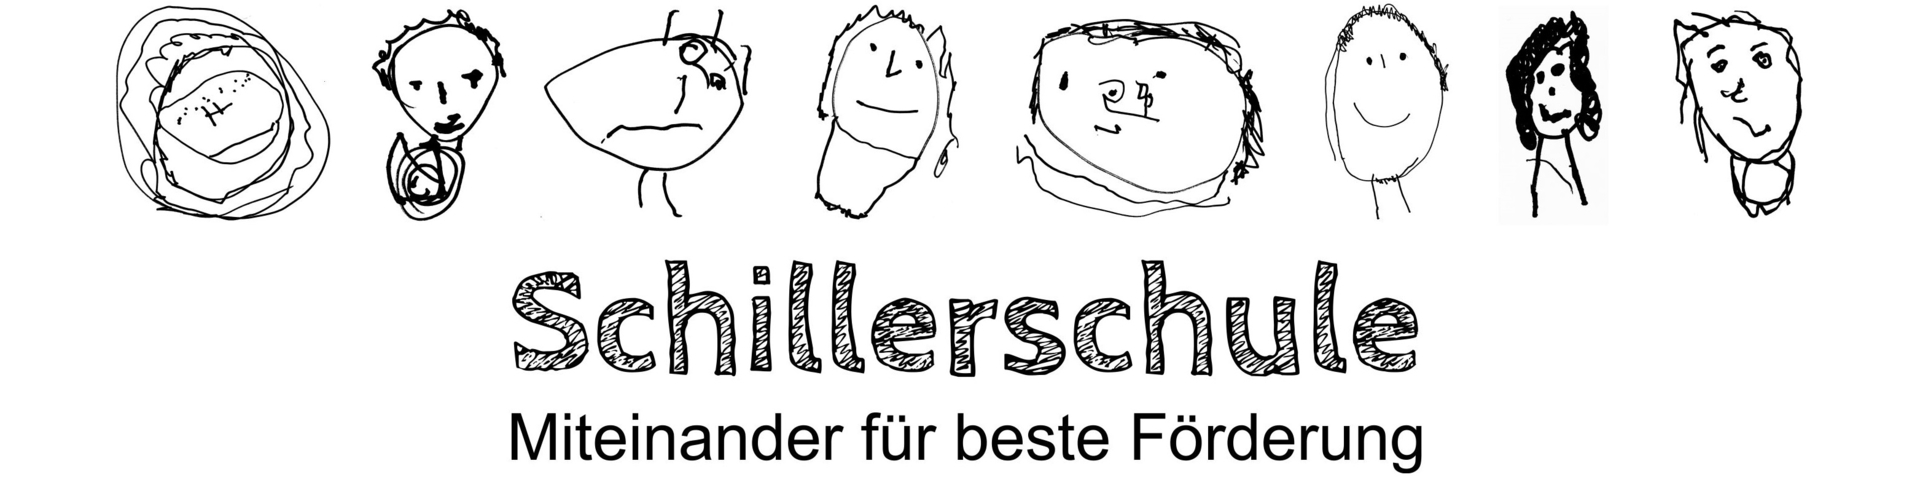 Schillerschule Oberhausen Miteinander für beste Förderung